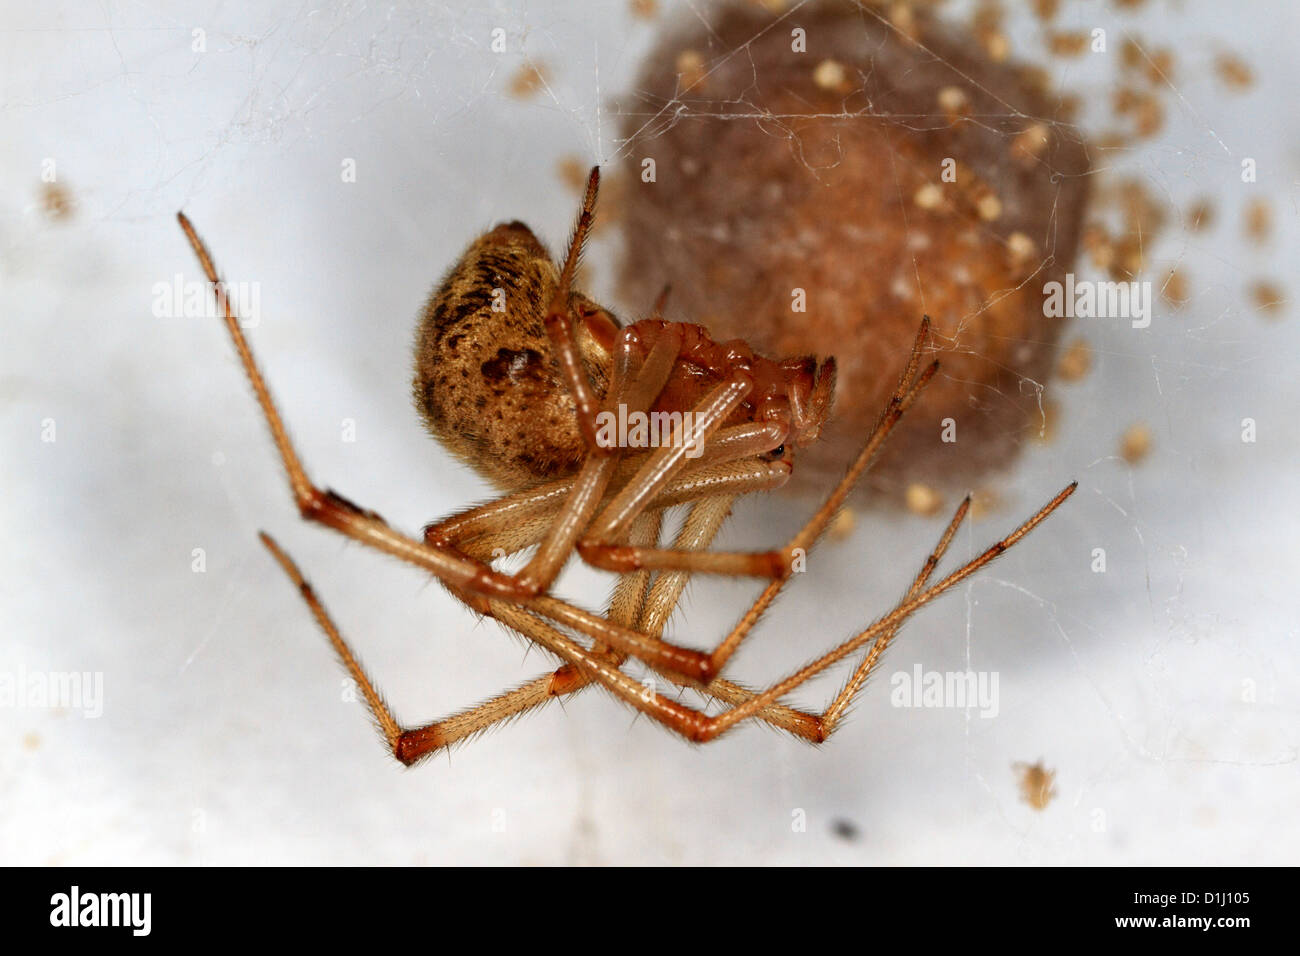 Casa común hembra de araña (Parasteatoda tepidariorum) con saco de huevos y crías. Foto de stock